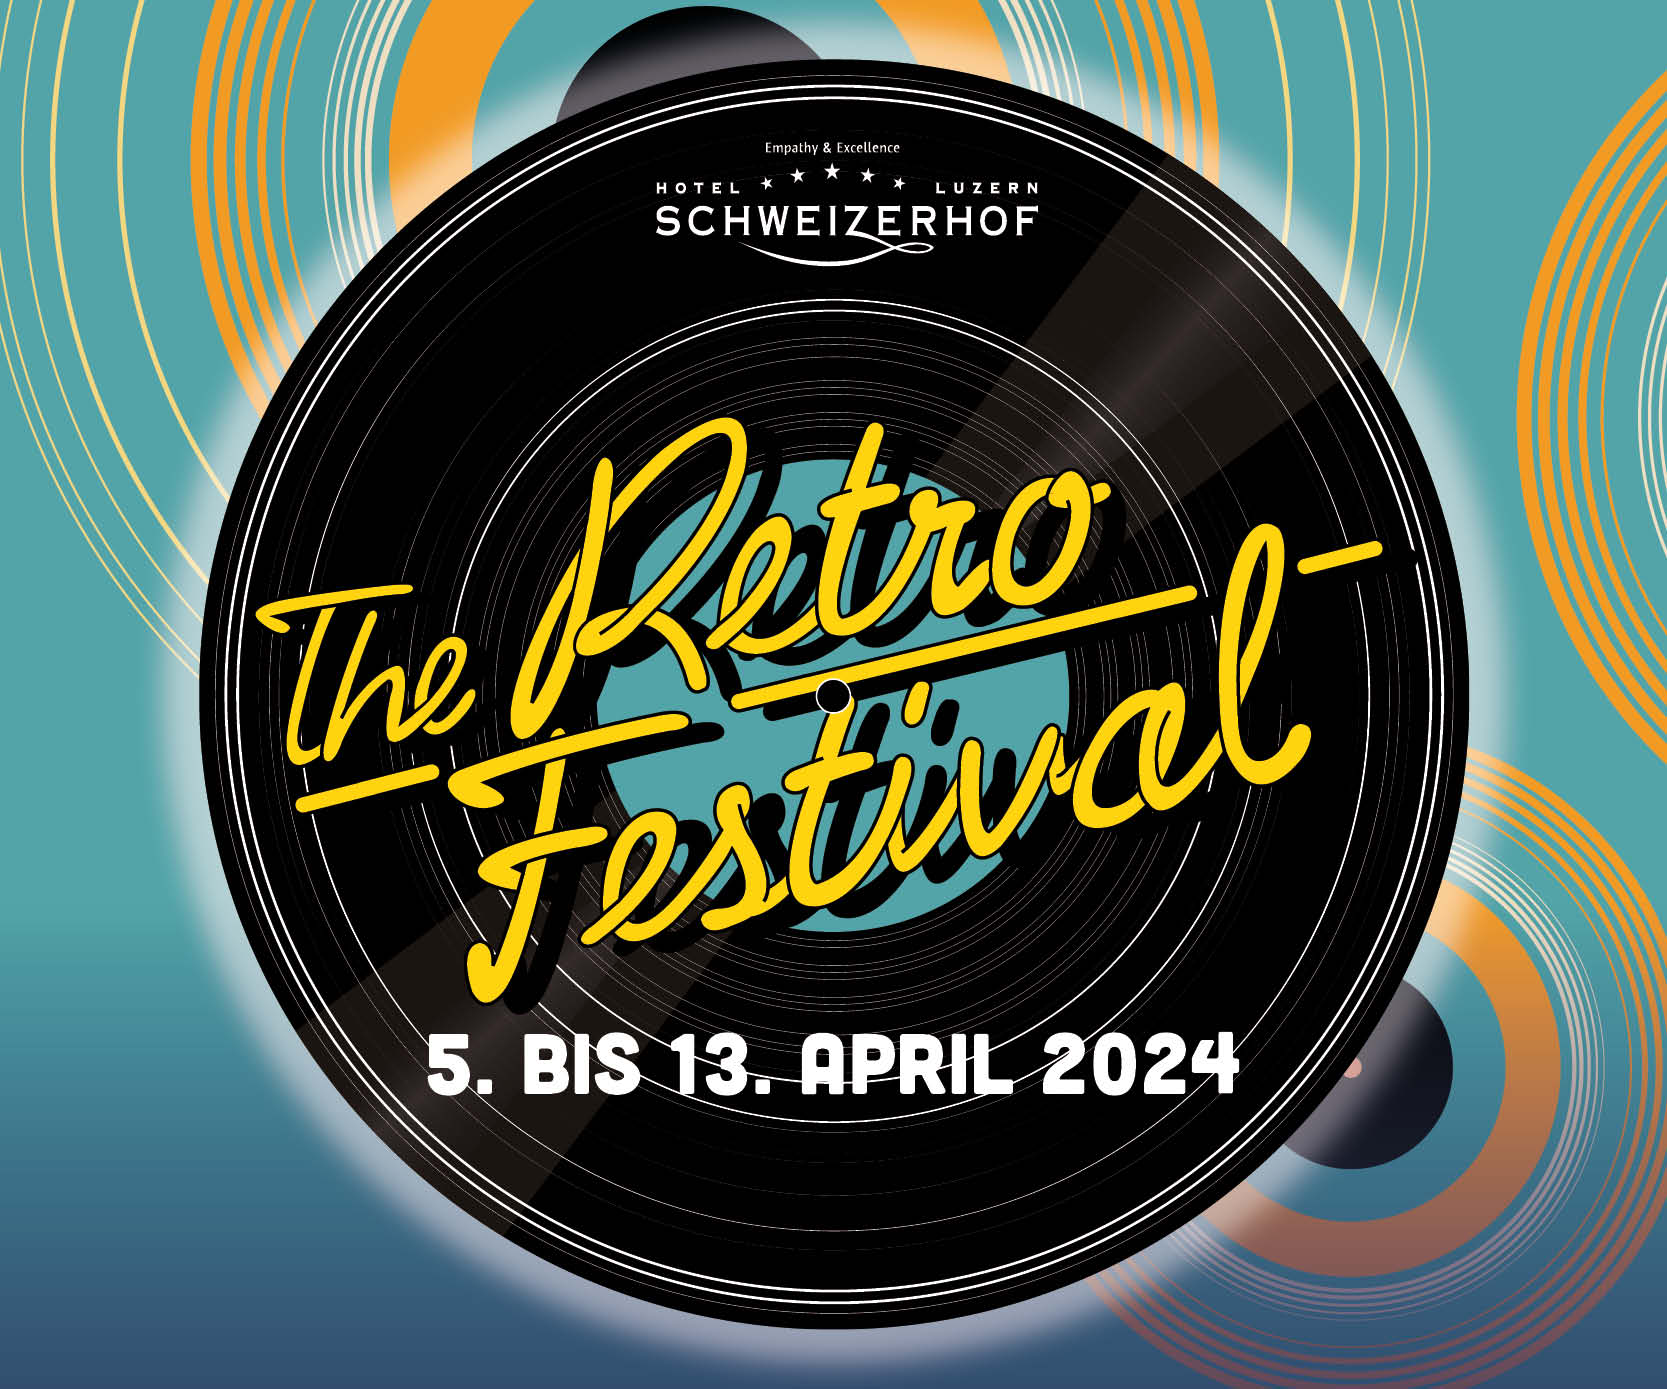 The Retro Festival 2024